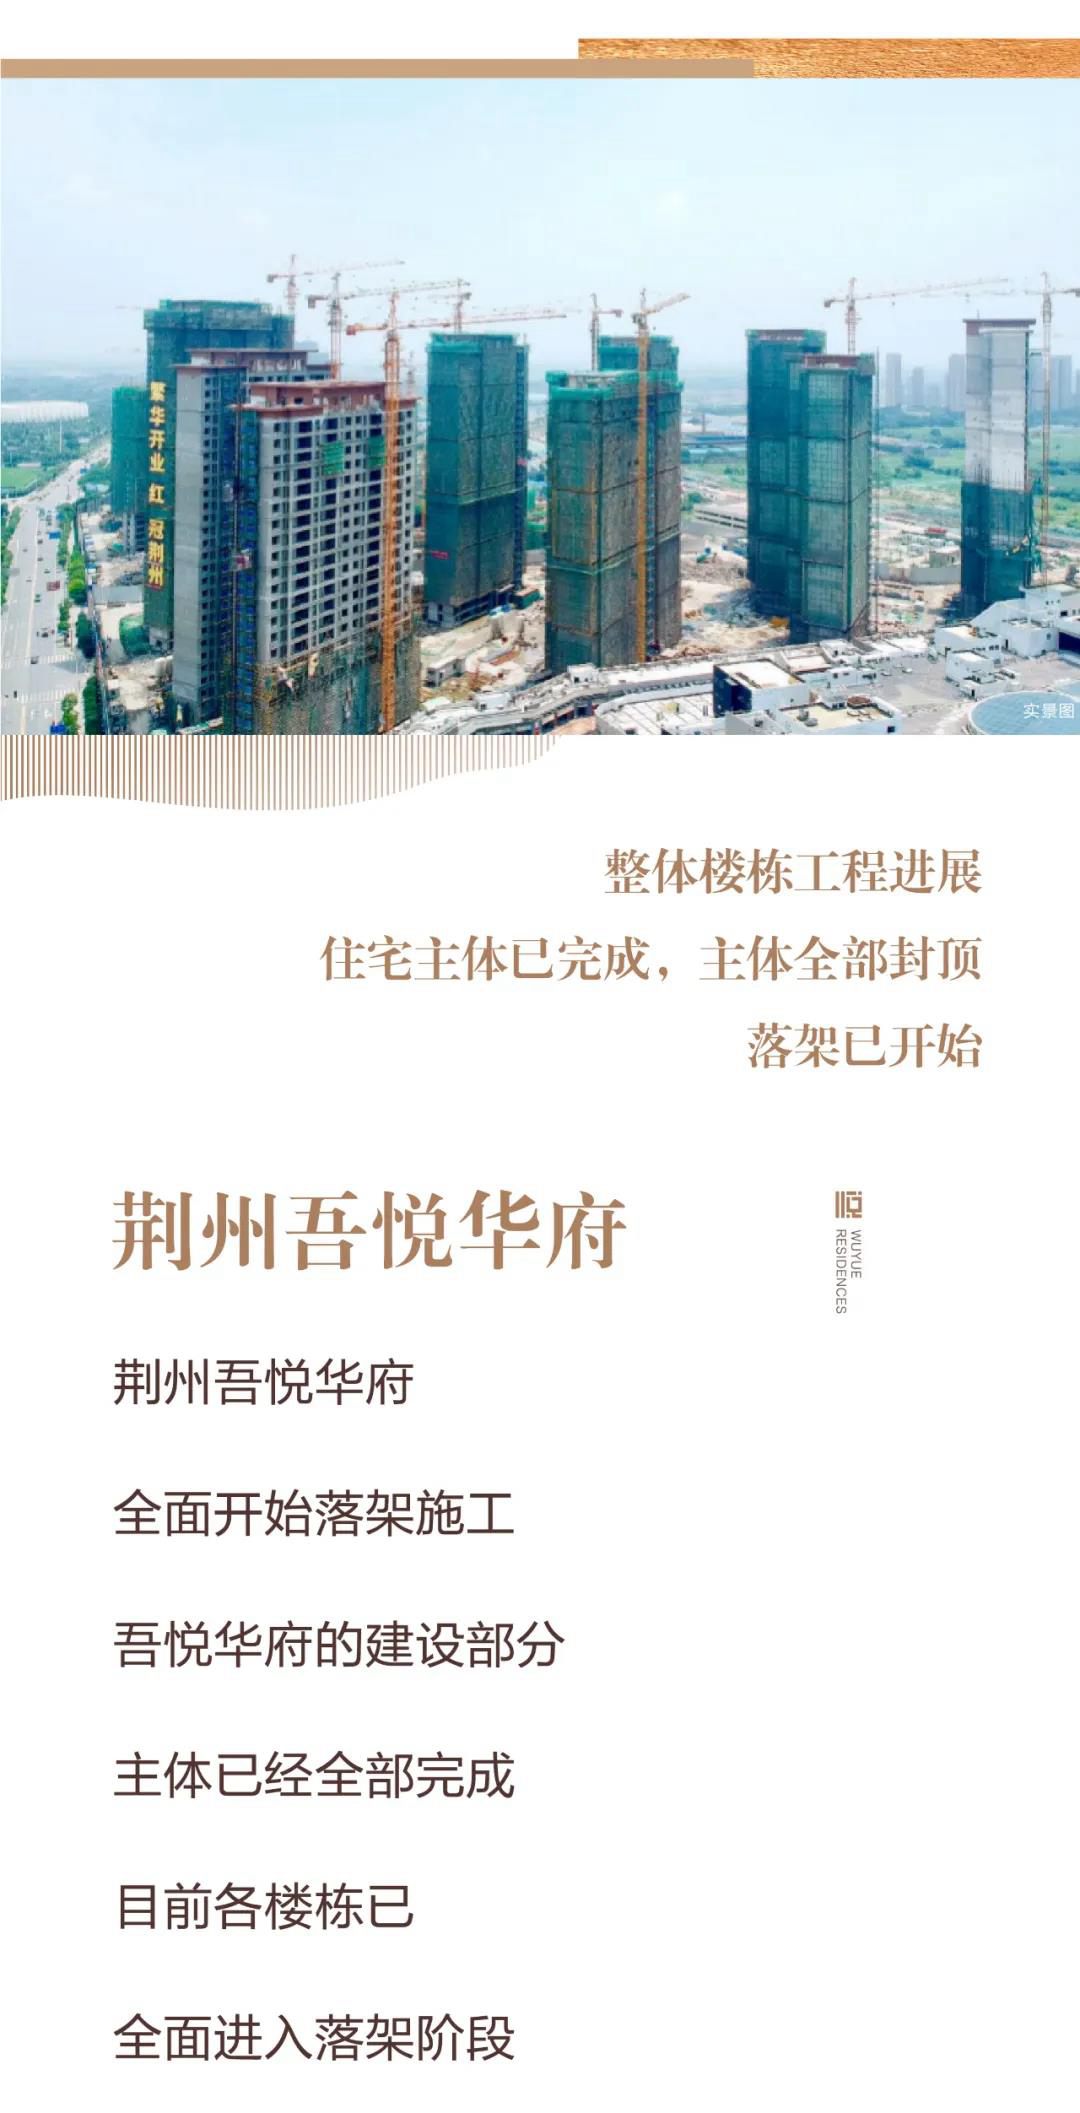 荆州吾悦广场 |六月项目进度 住宅主体完工 大商业装修80%